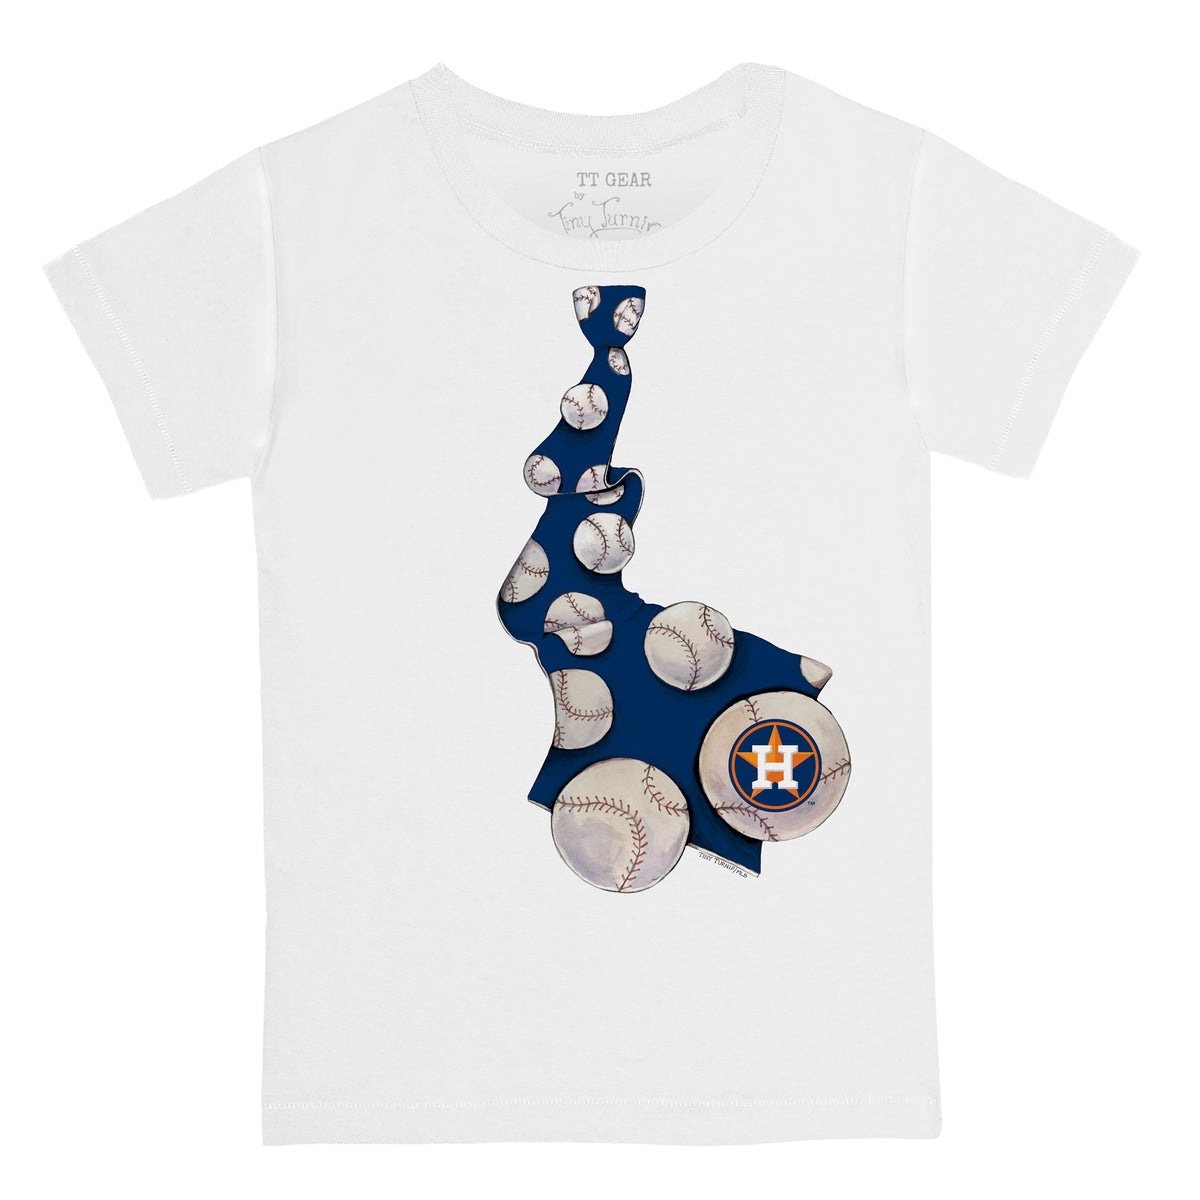 Houston Astros baseball love shirt - Kingteeshop